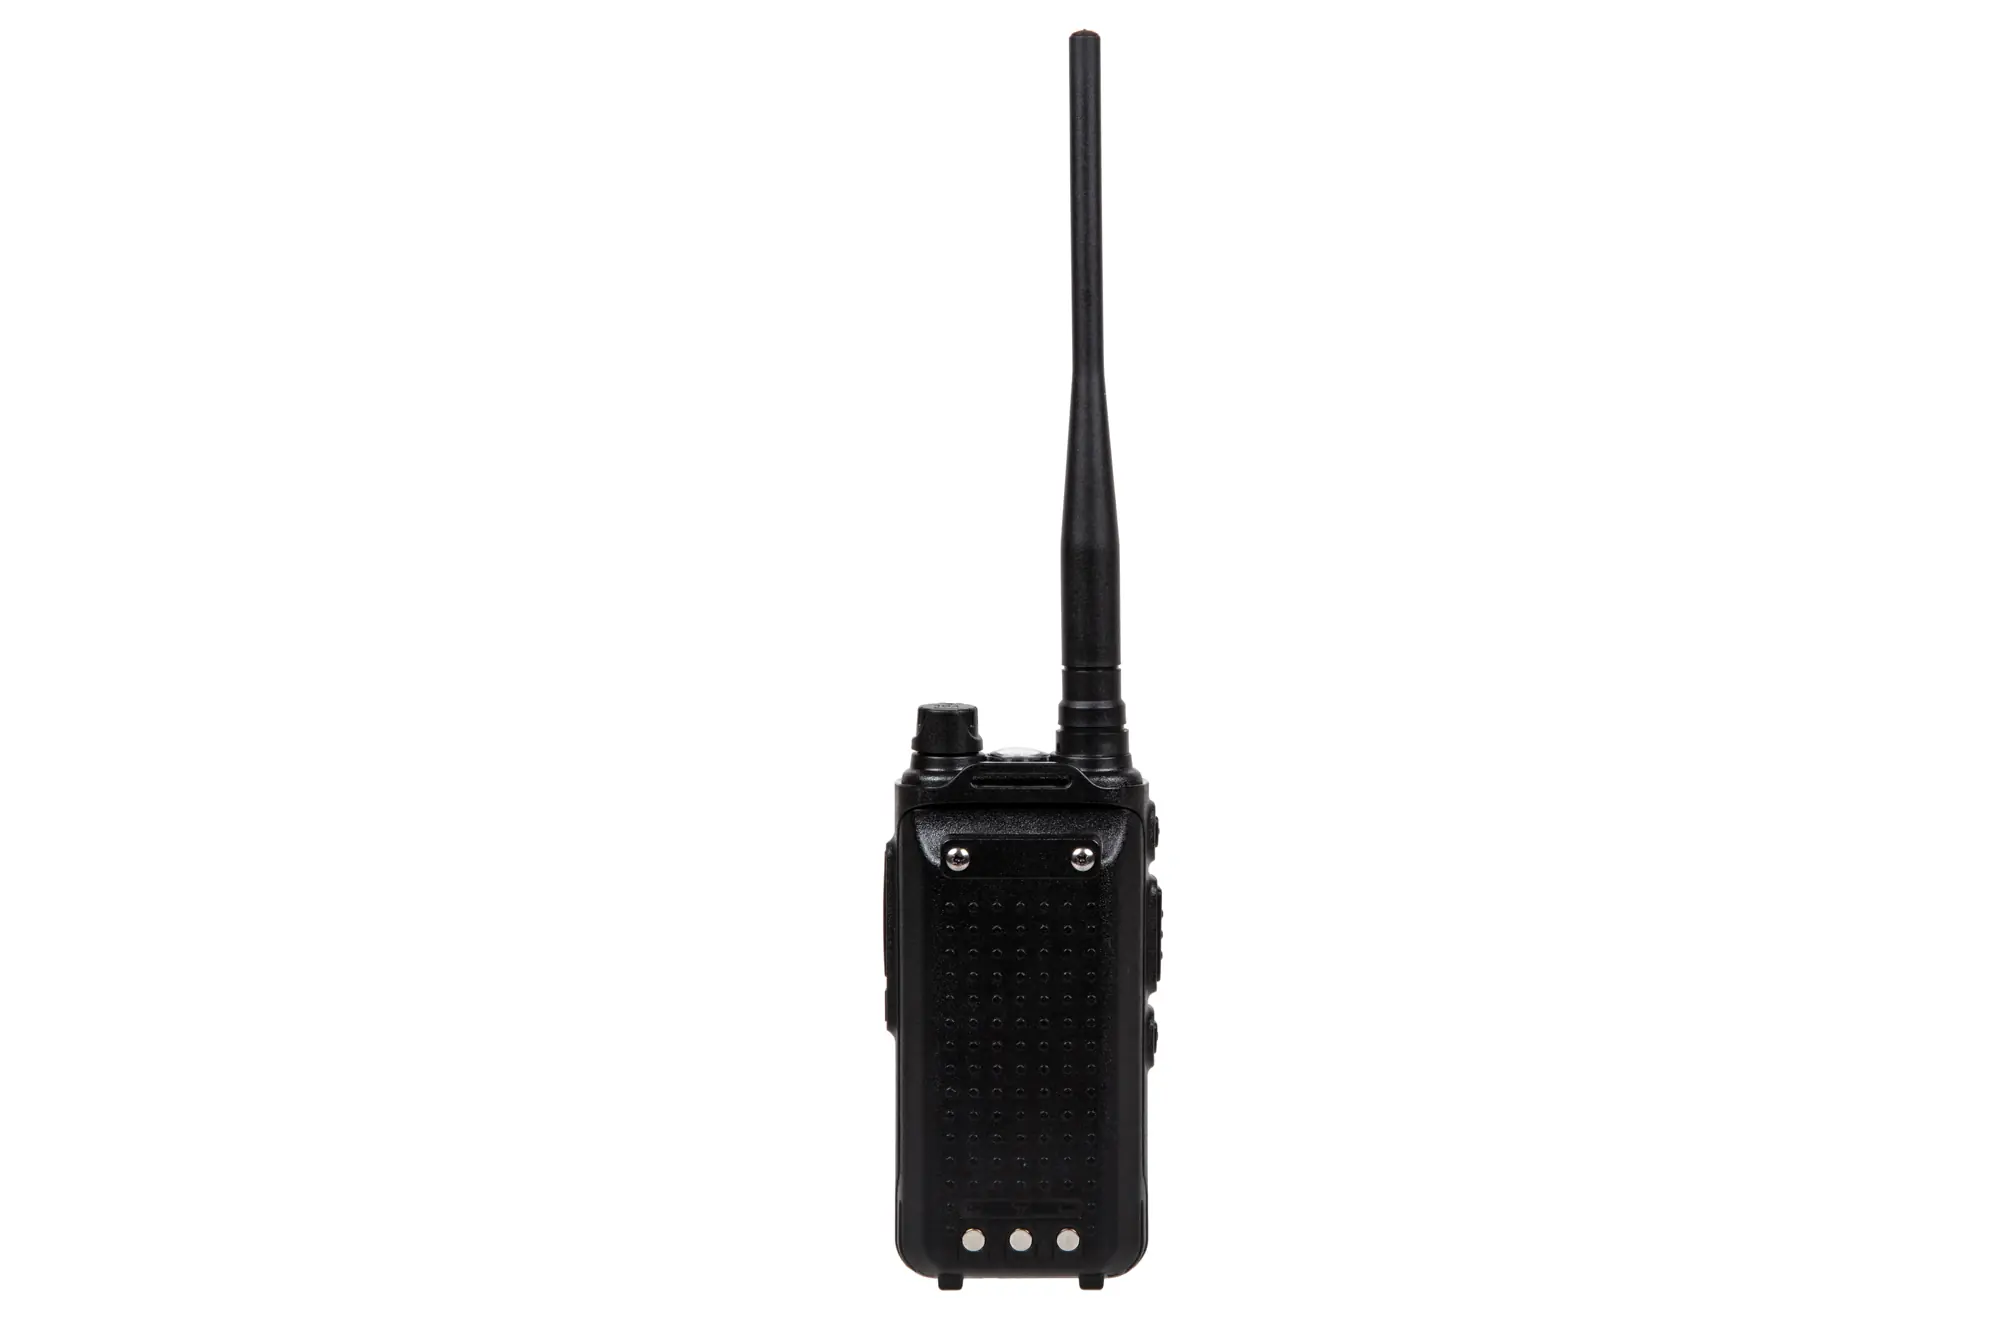 Specna Arms Dwuzakresowe radio Shortie 13 (VHF/UHF)